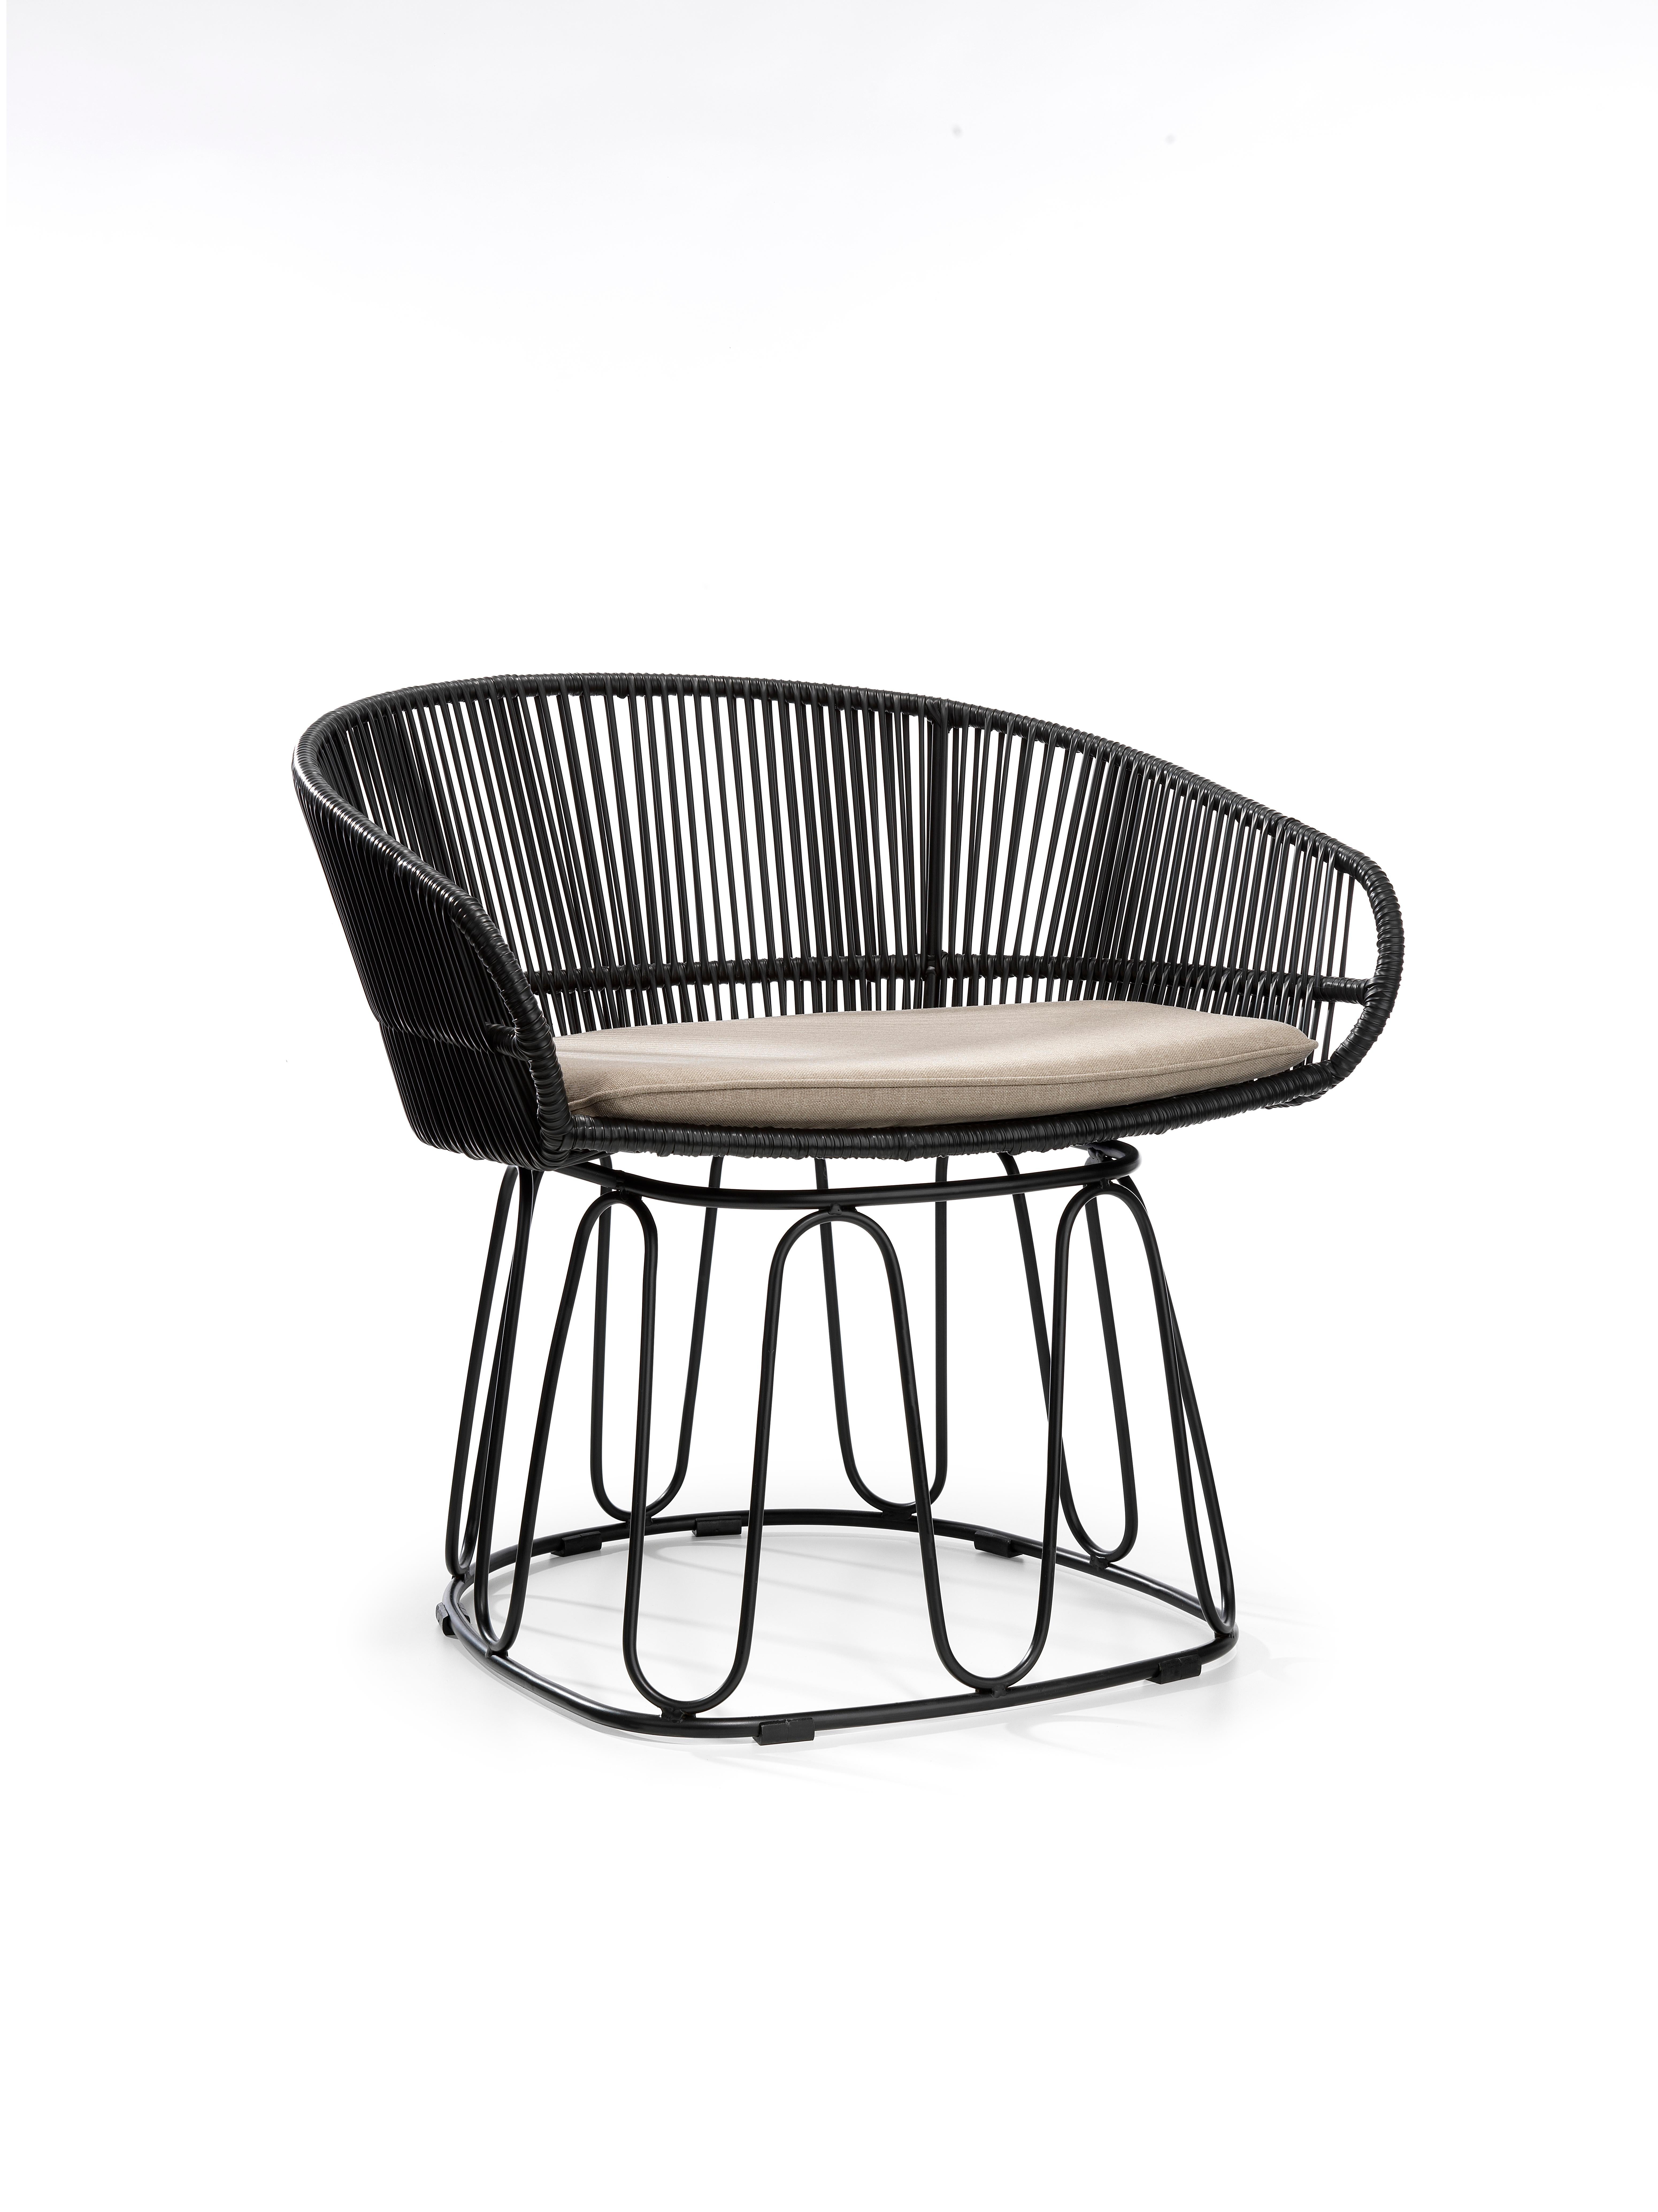 Modern Black Circo Lounge Chair by Sebastian Herkner